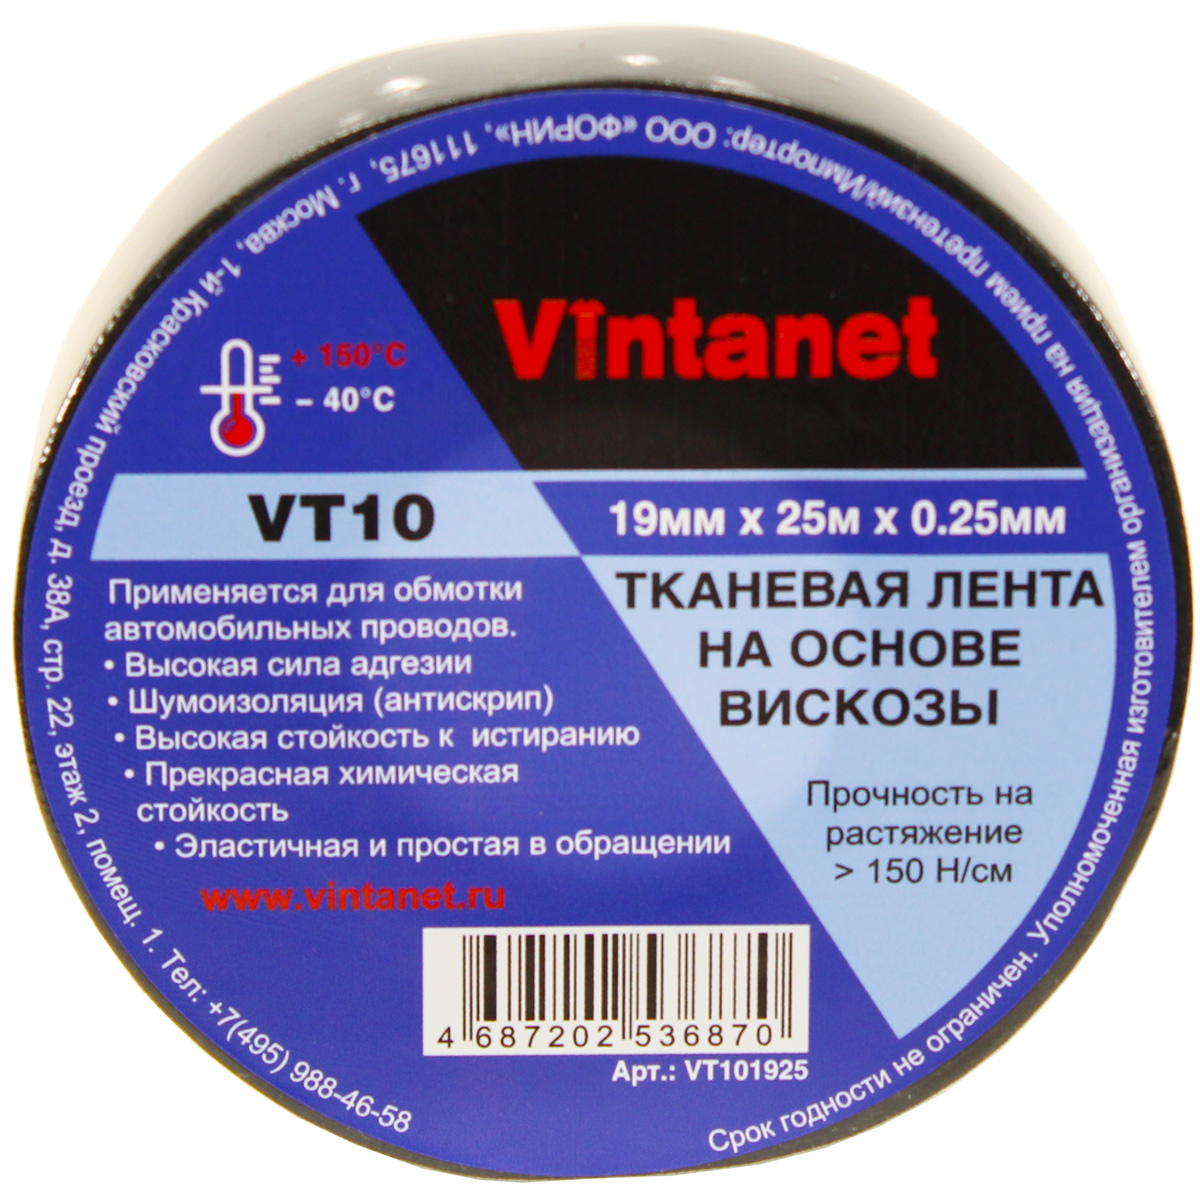 Тканевая лента на основе вискозы Vintanet VT10, 19мм х 25м, VT101925